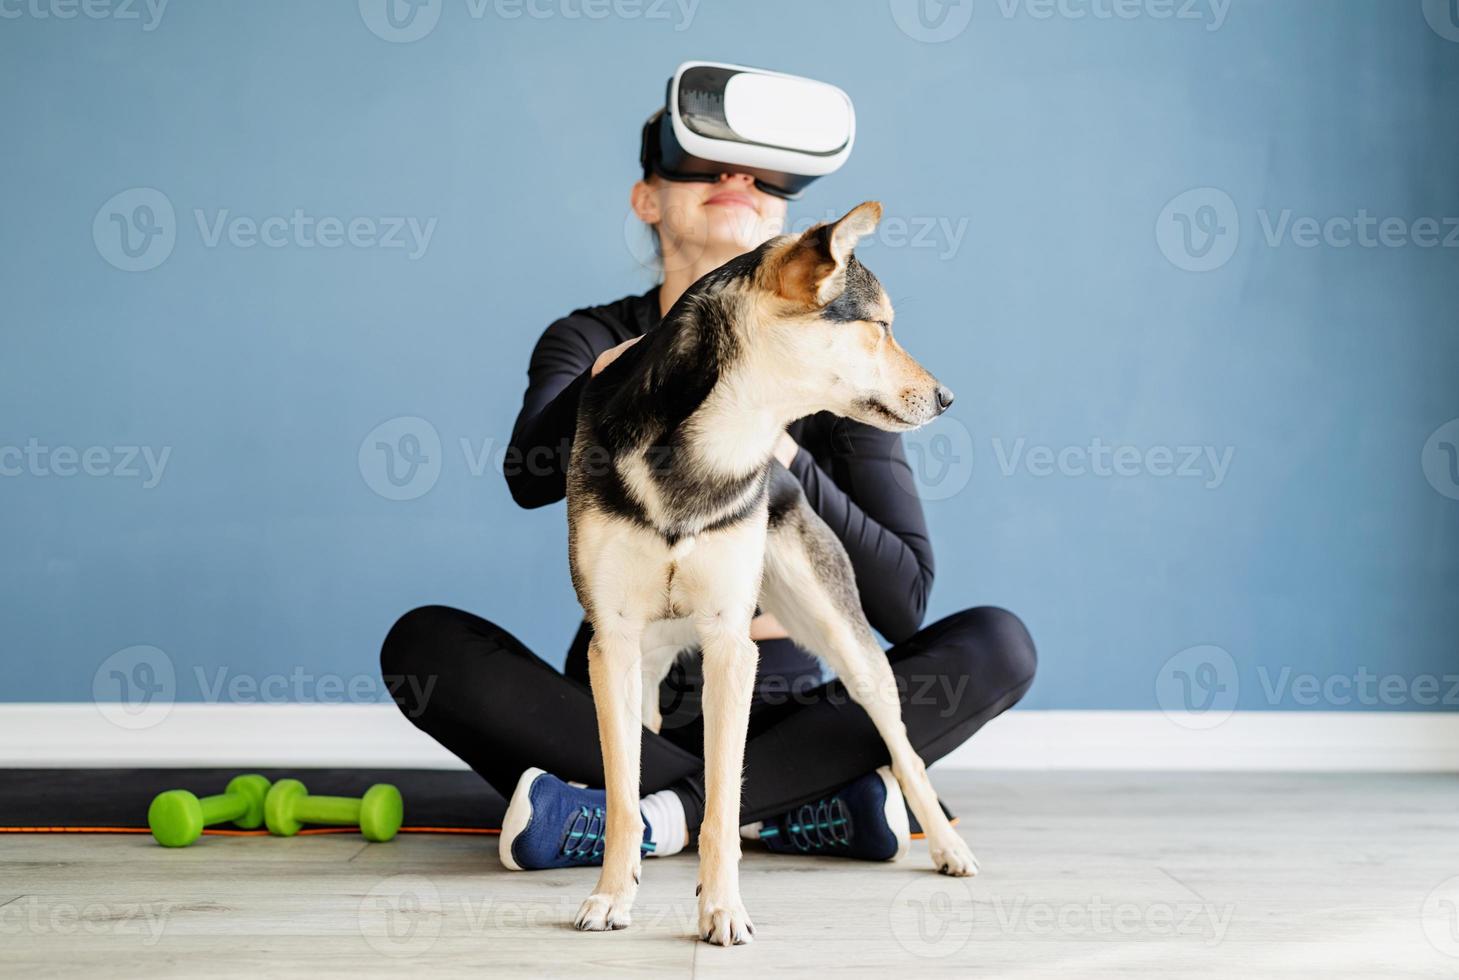 jonge vrouw in sportkleding met een virtual reality-bril zittend op een fitnessmat met hond foto